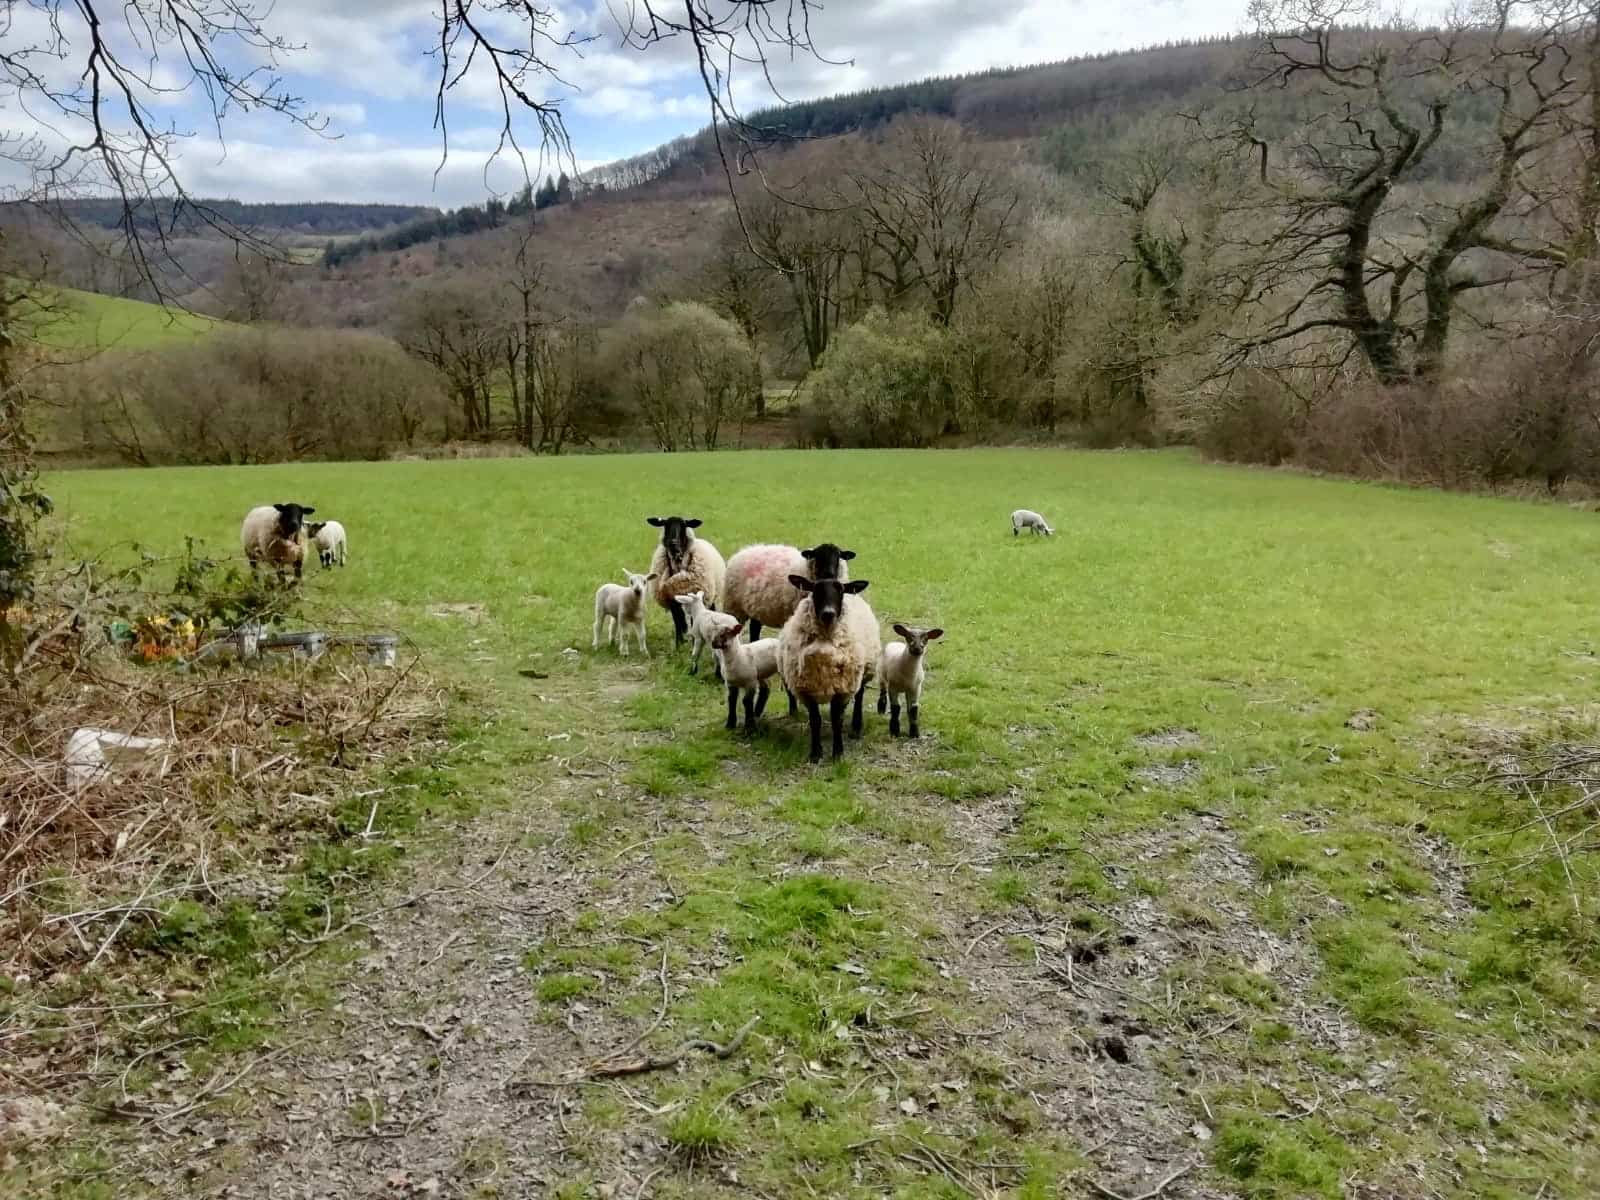 Sheep in a field in Wales